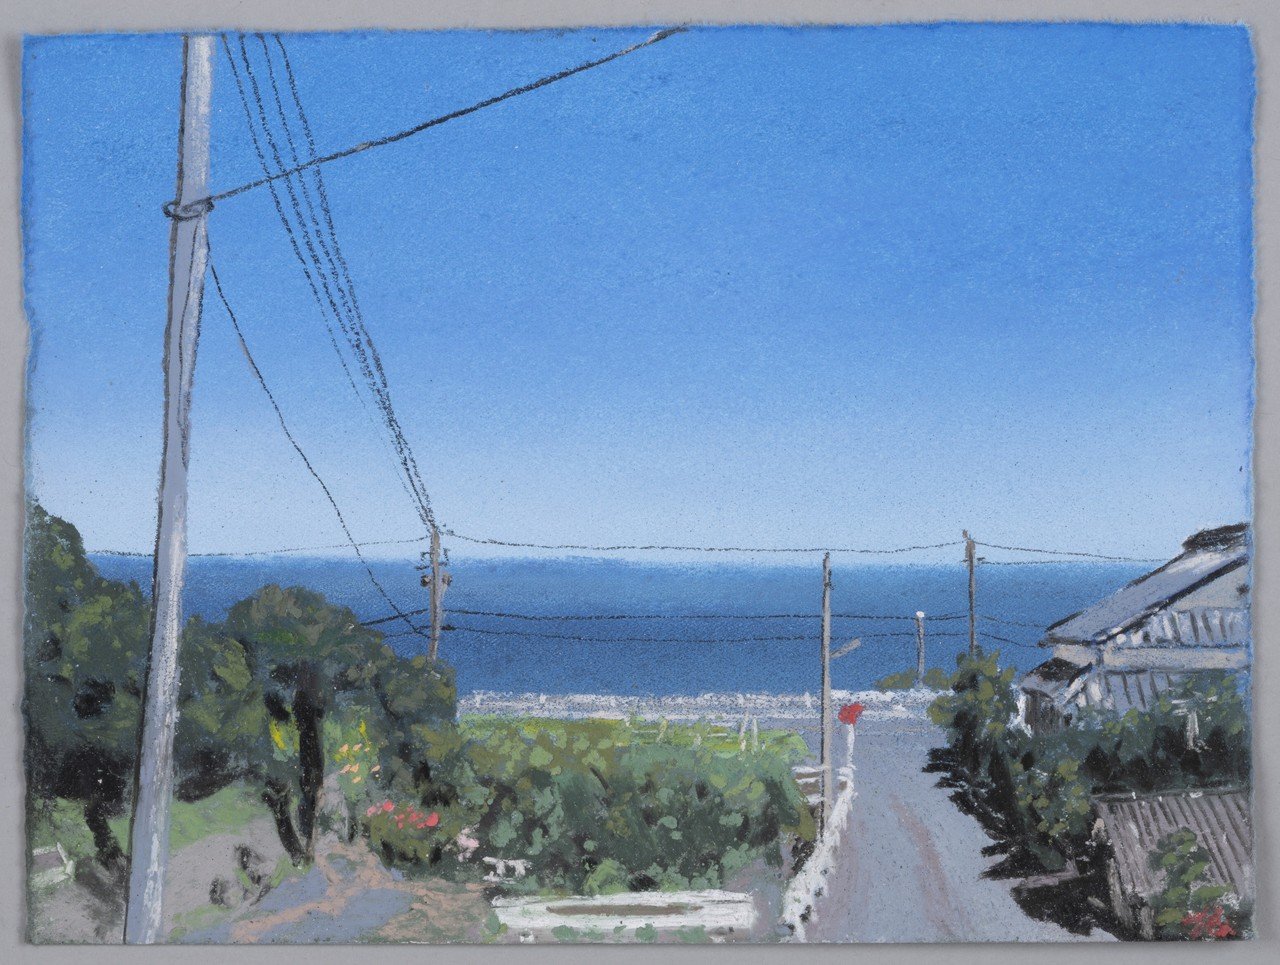 坂口恭平の新境地、初のパステル画集『Pastel』ついに刊行。9月5日より